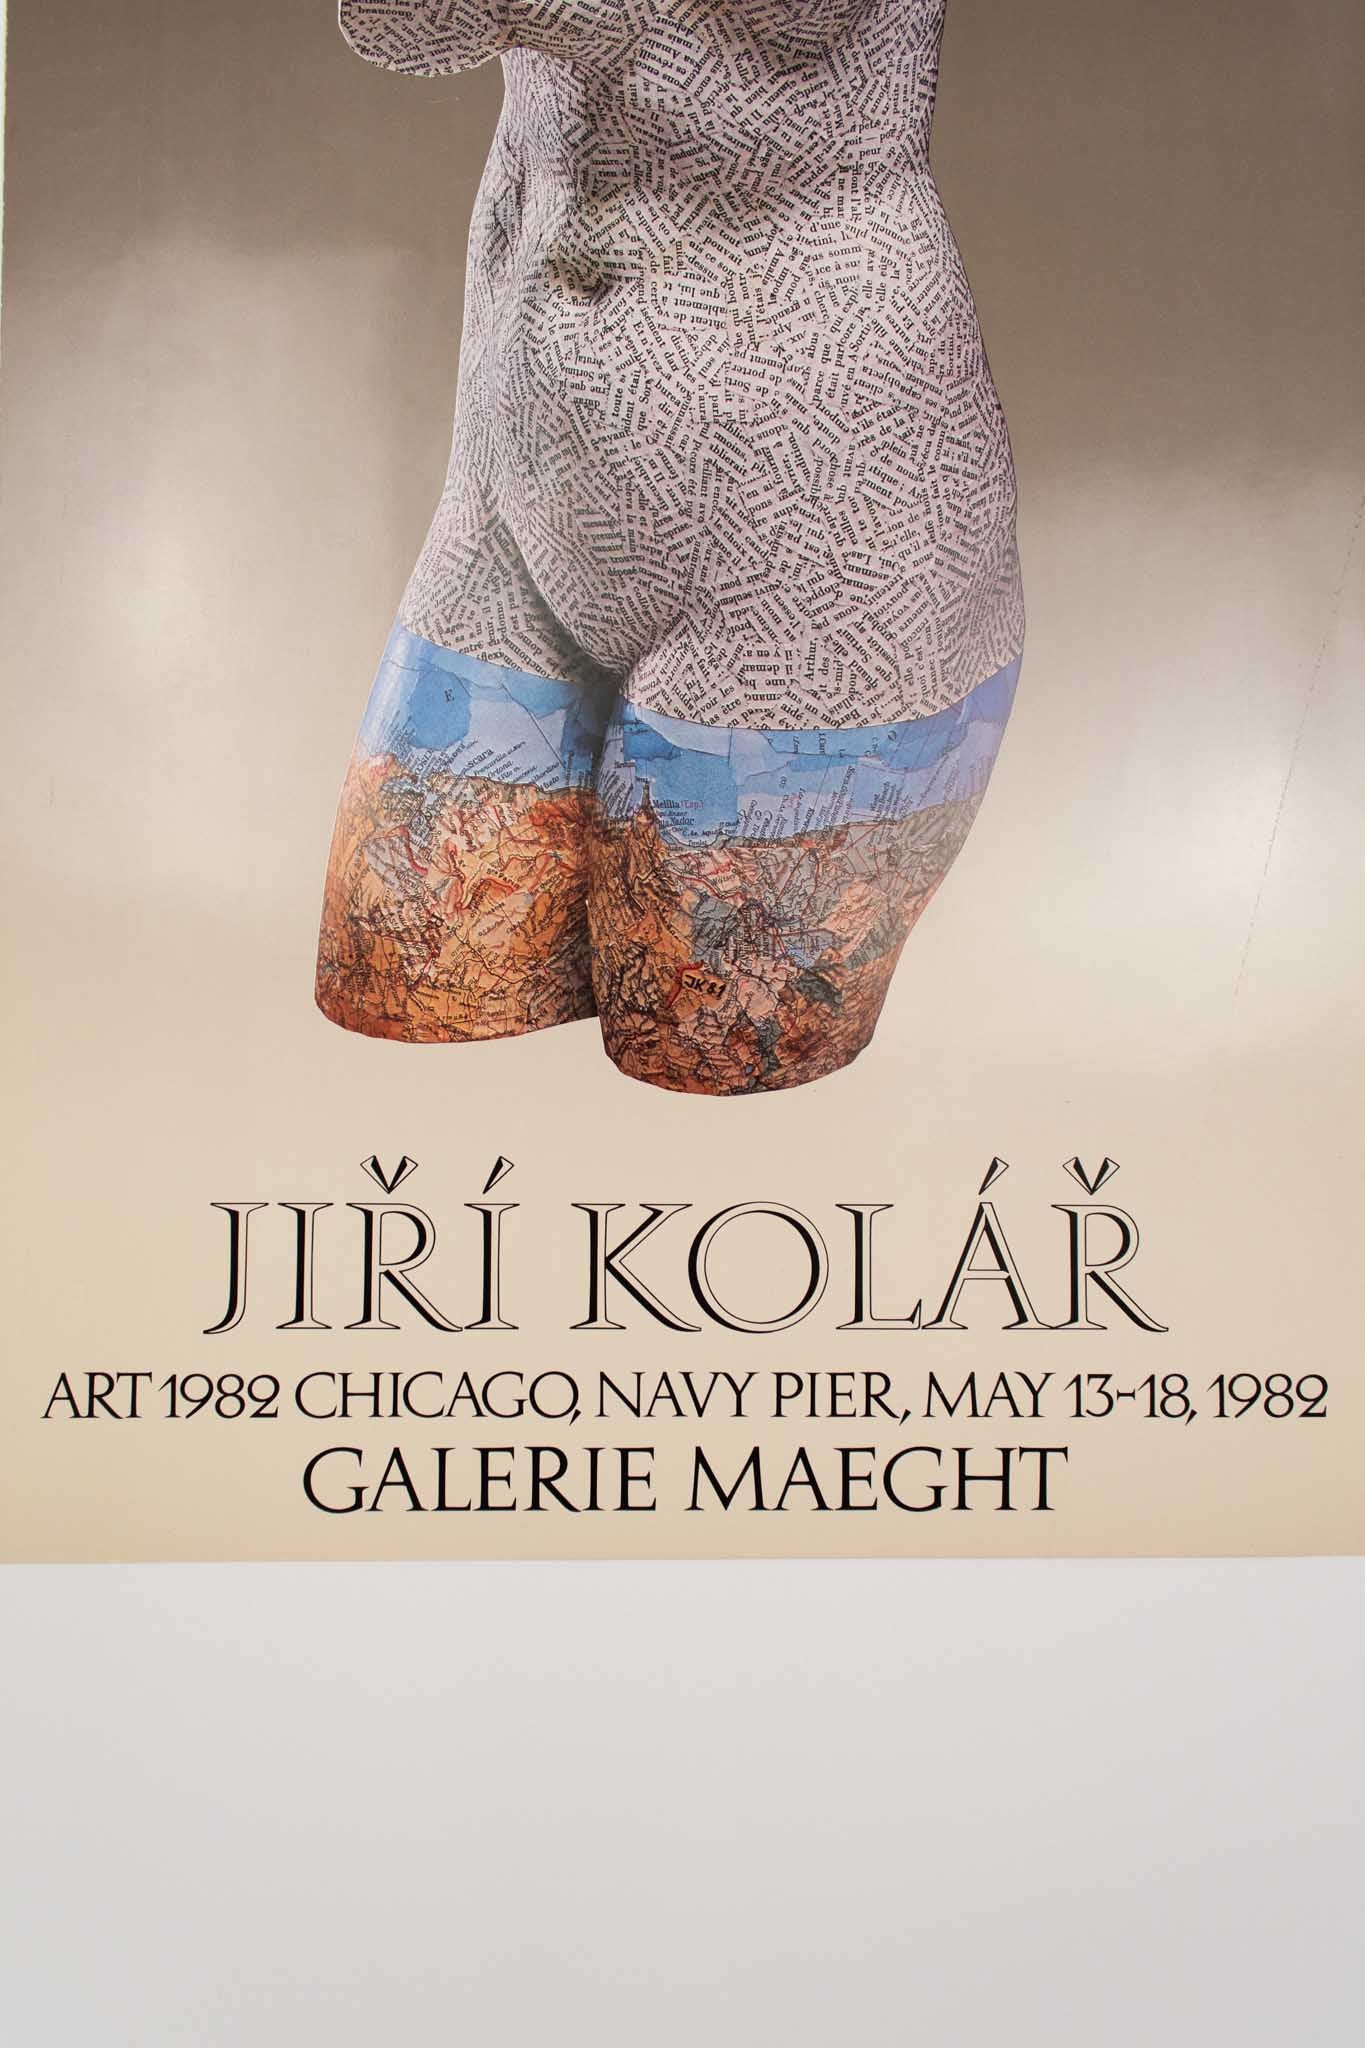 Jiri Kolar 1982 "Galerie Maeght" Print